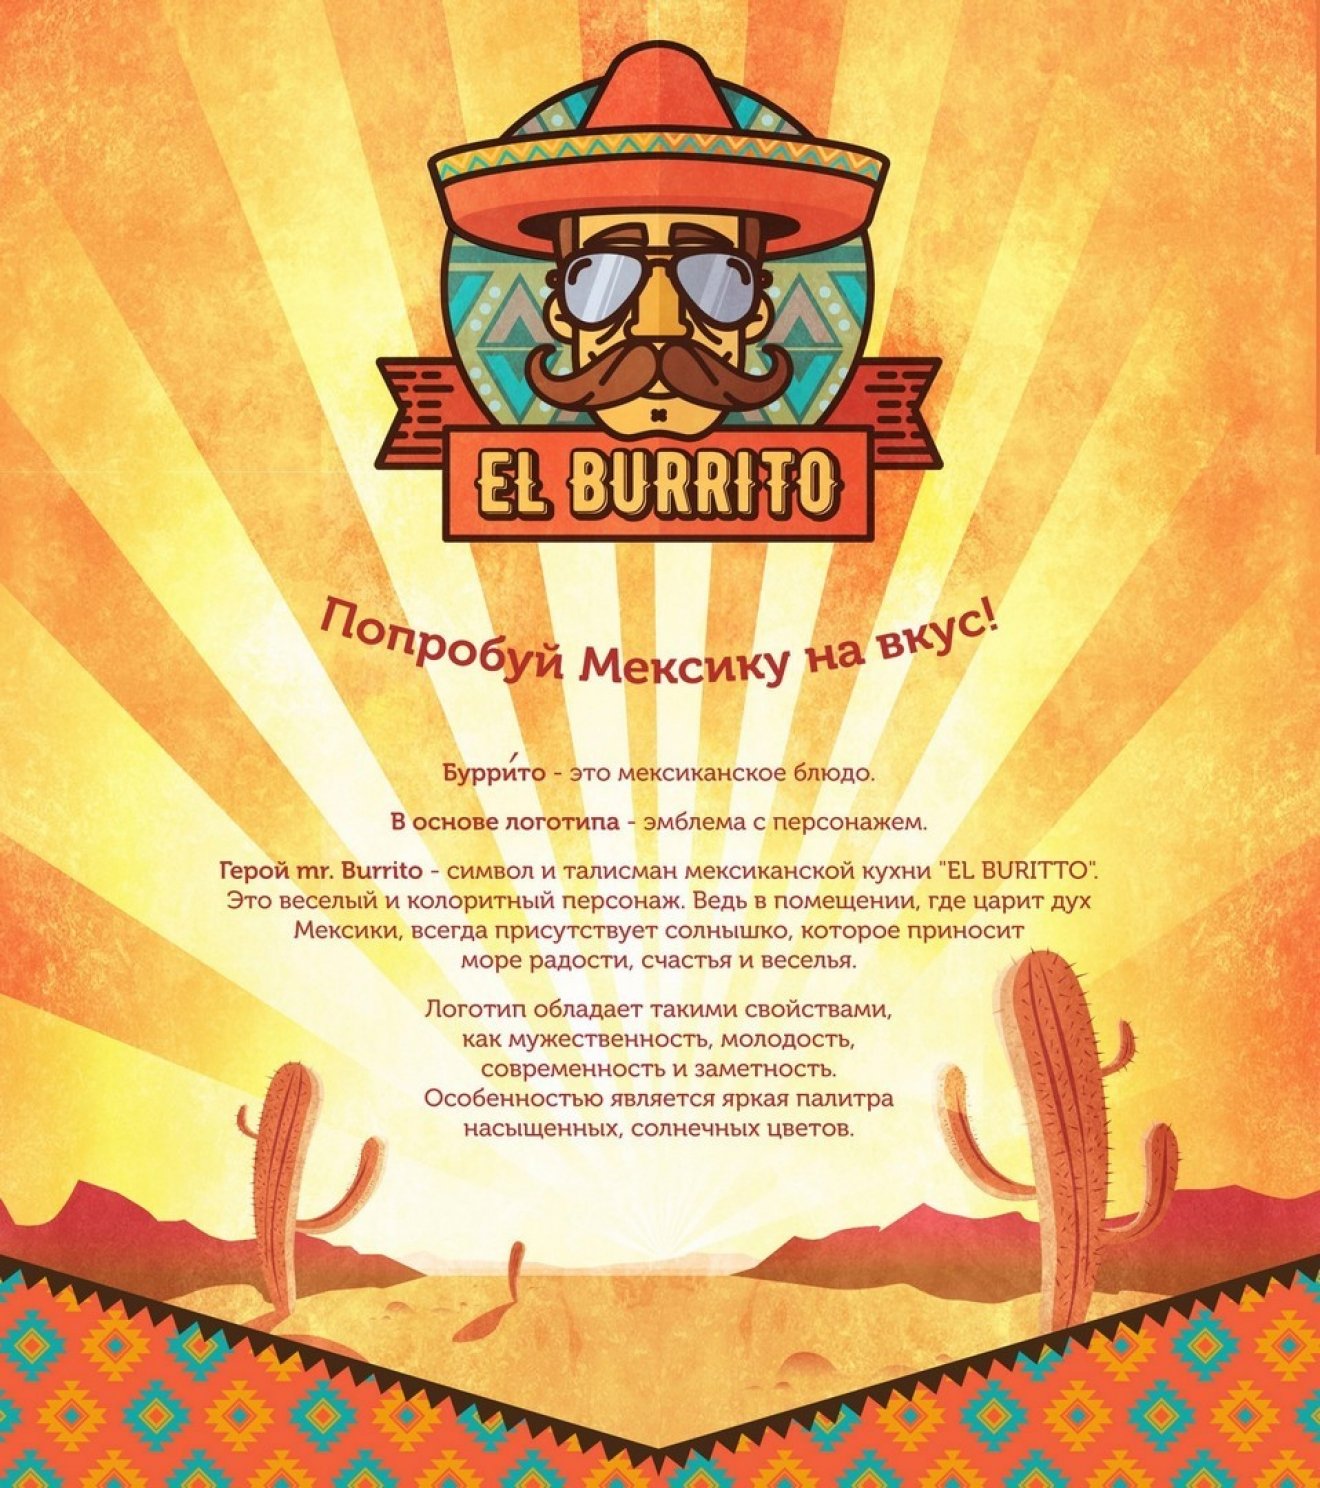 Гастрономический павильон "El Burrito"